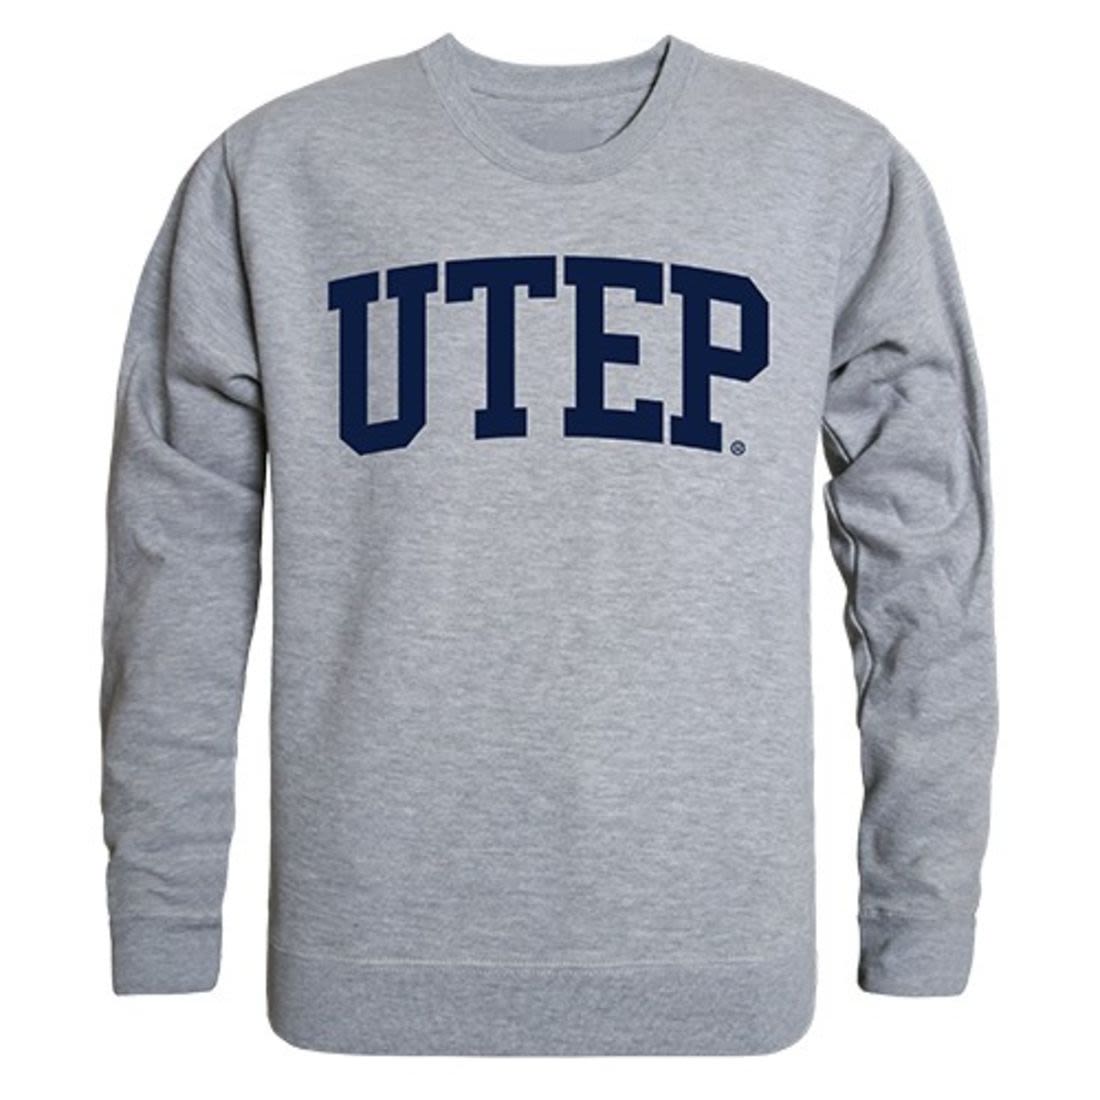 UTEP University of Texas at El Paso Game Day Crewneck Pullover Sweatsh